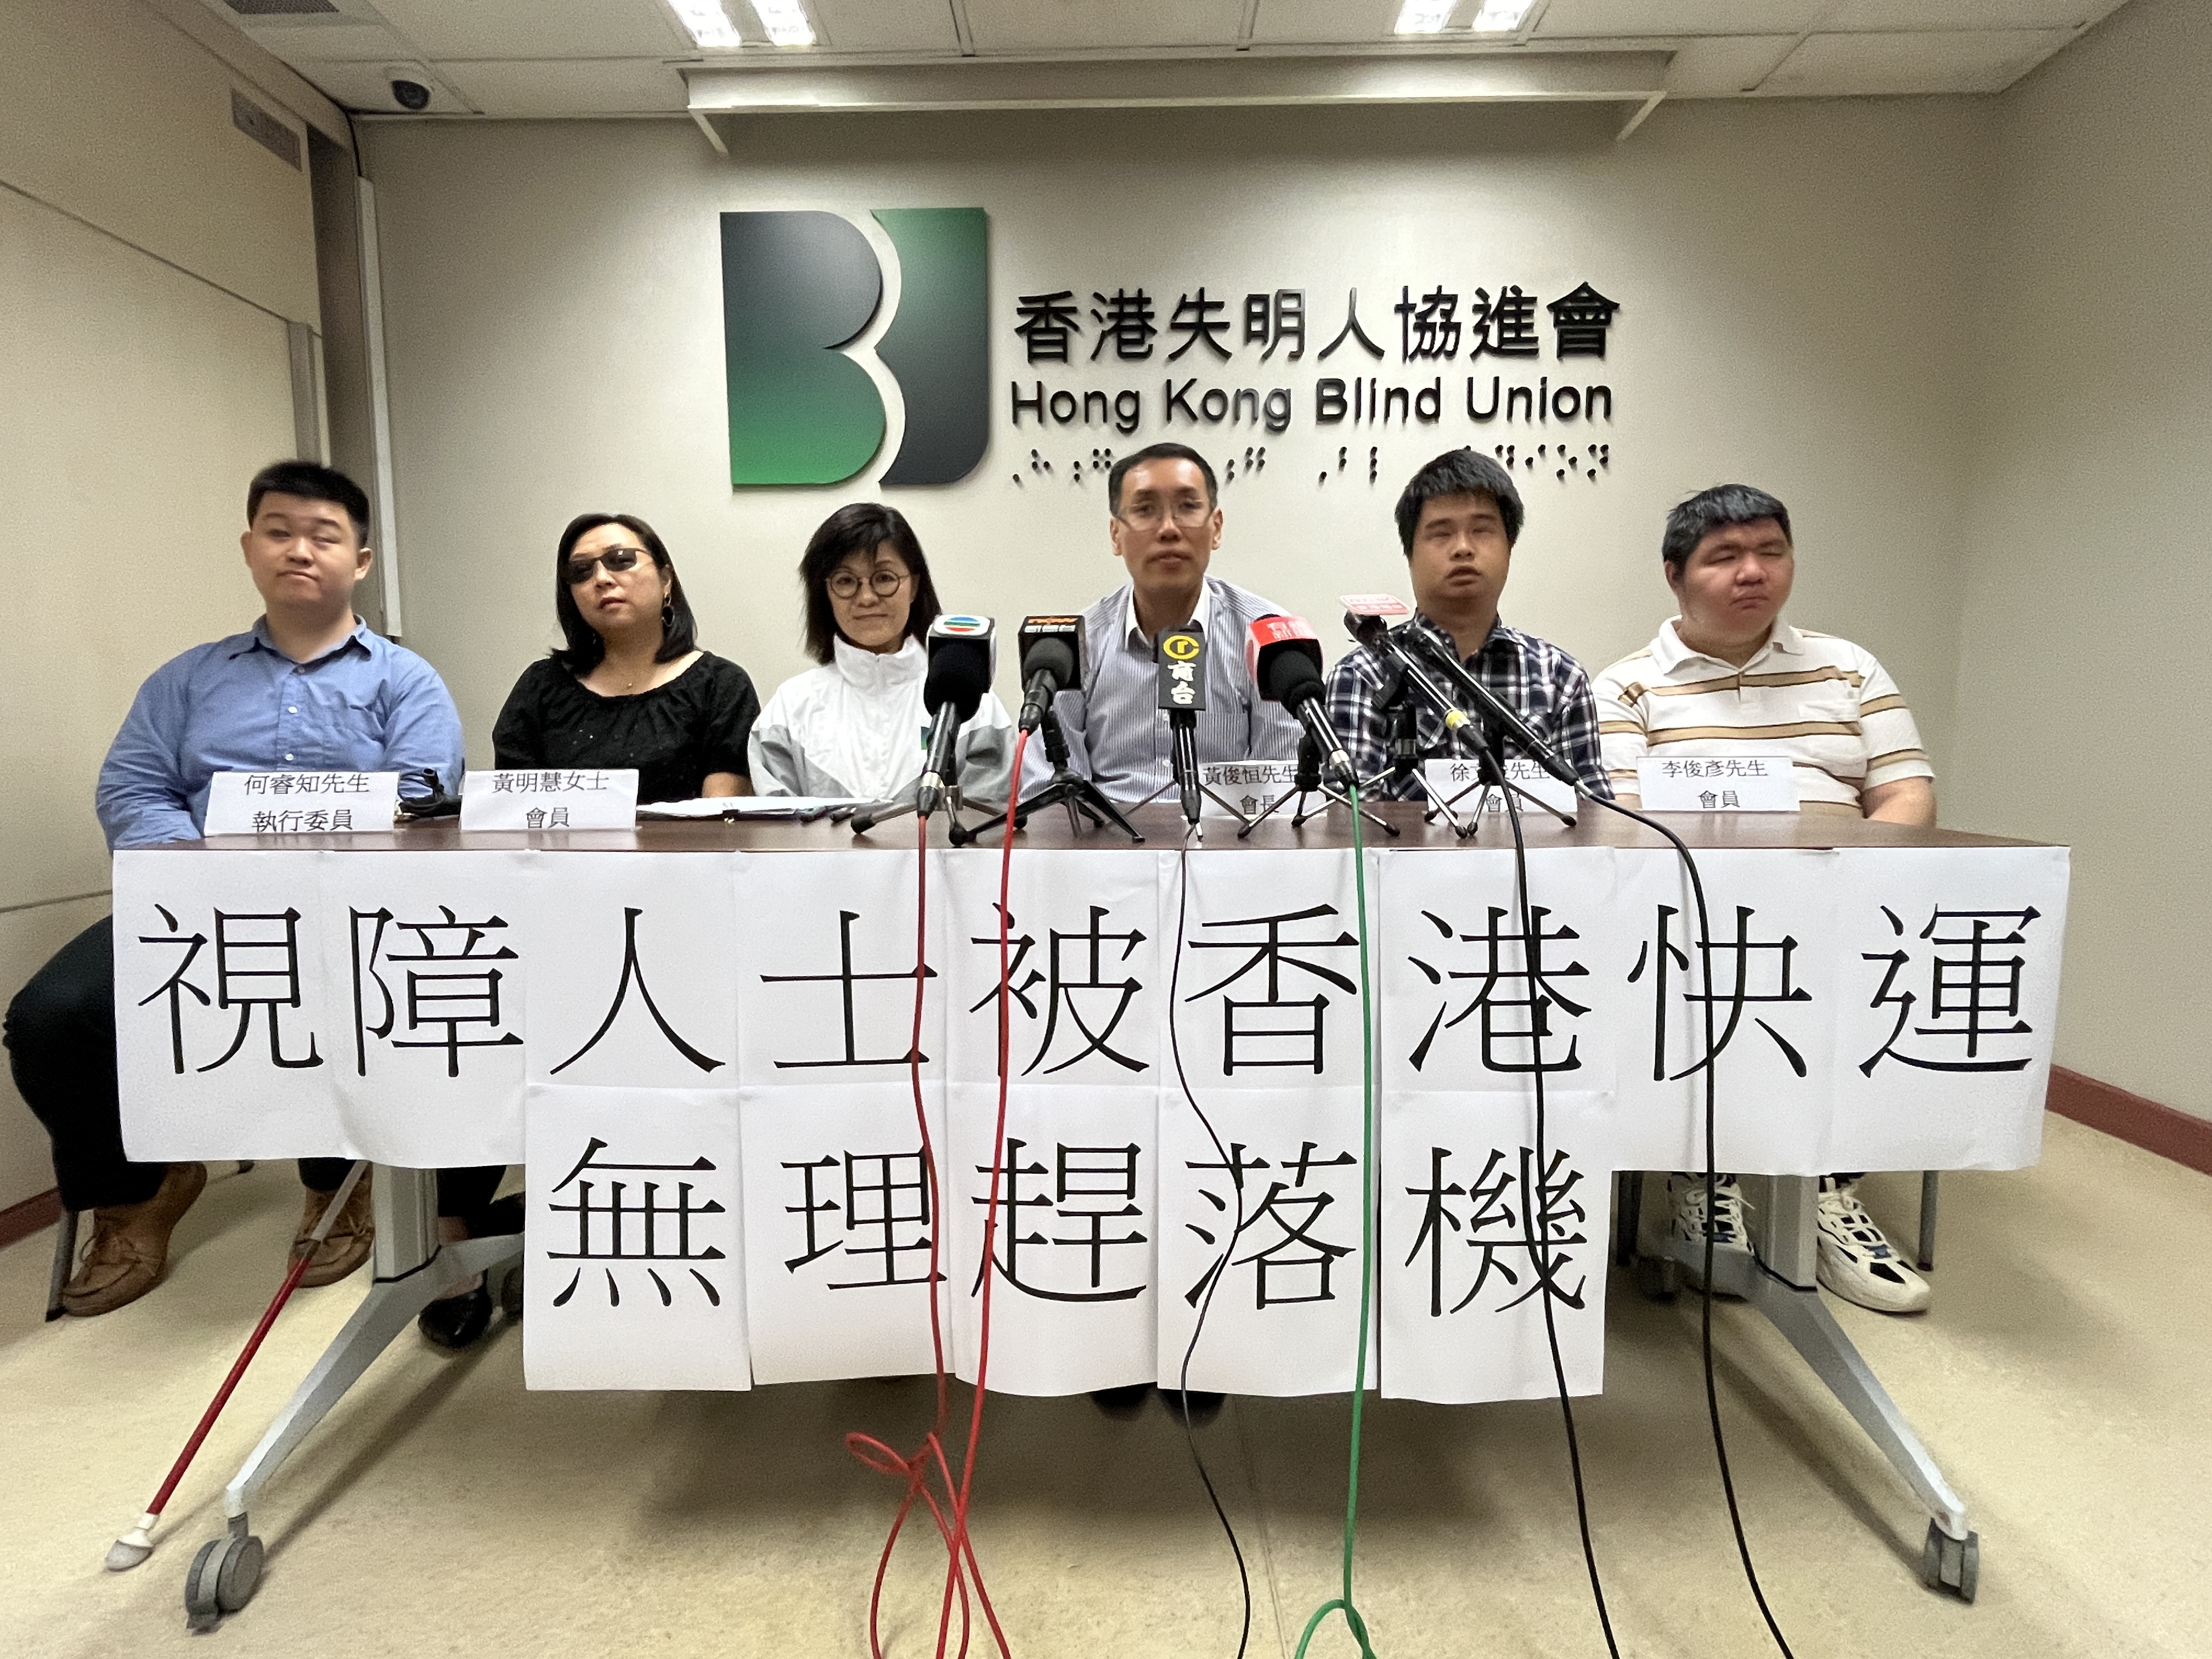 記者會 - 視障人士被香港快運無理「趕落機」 本會要求母公司國泰航空就事件進行獨立調查